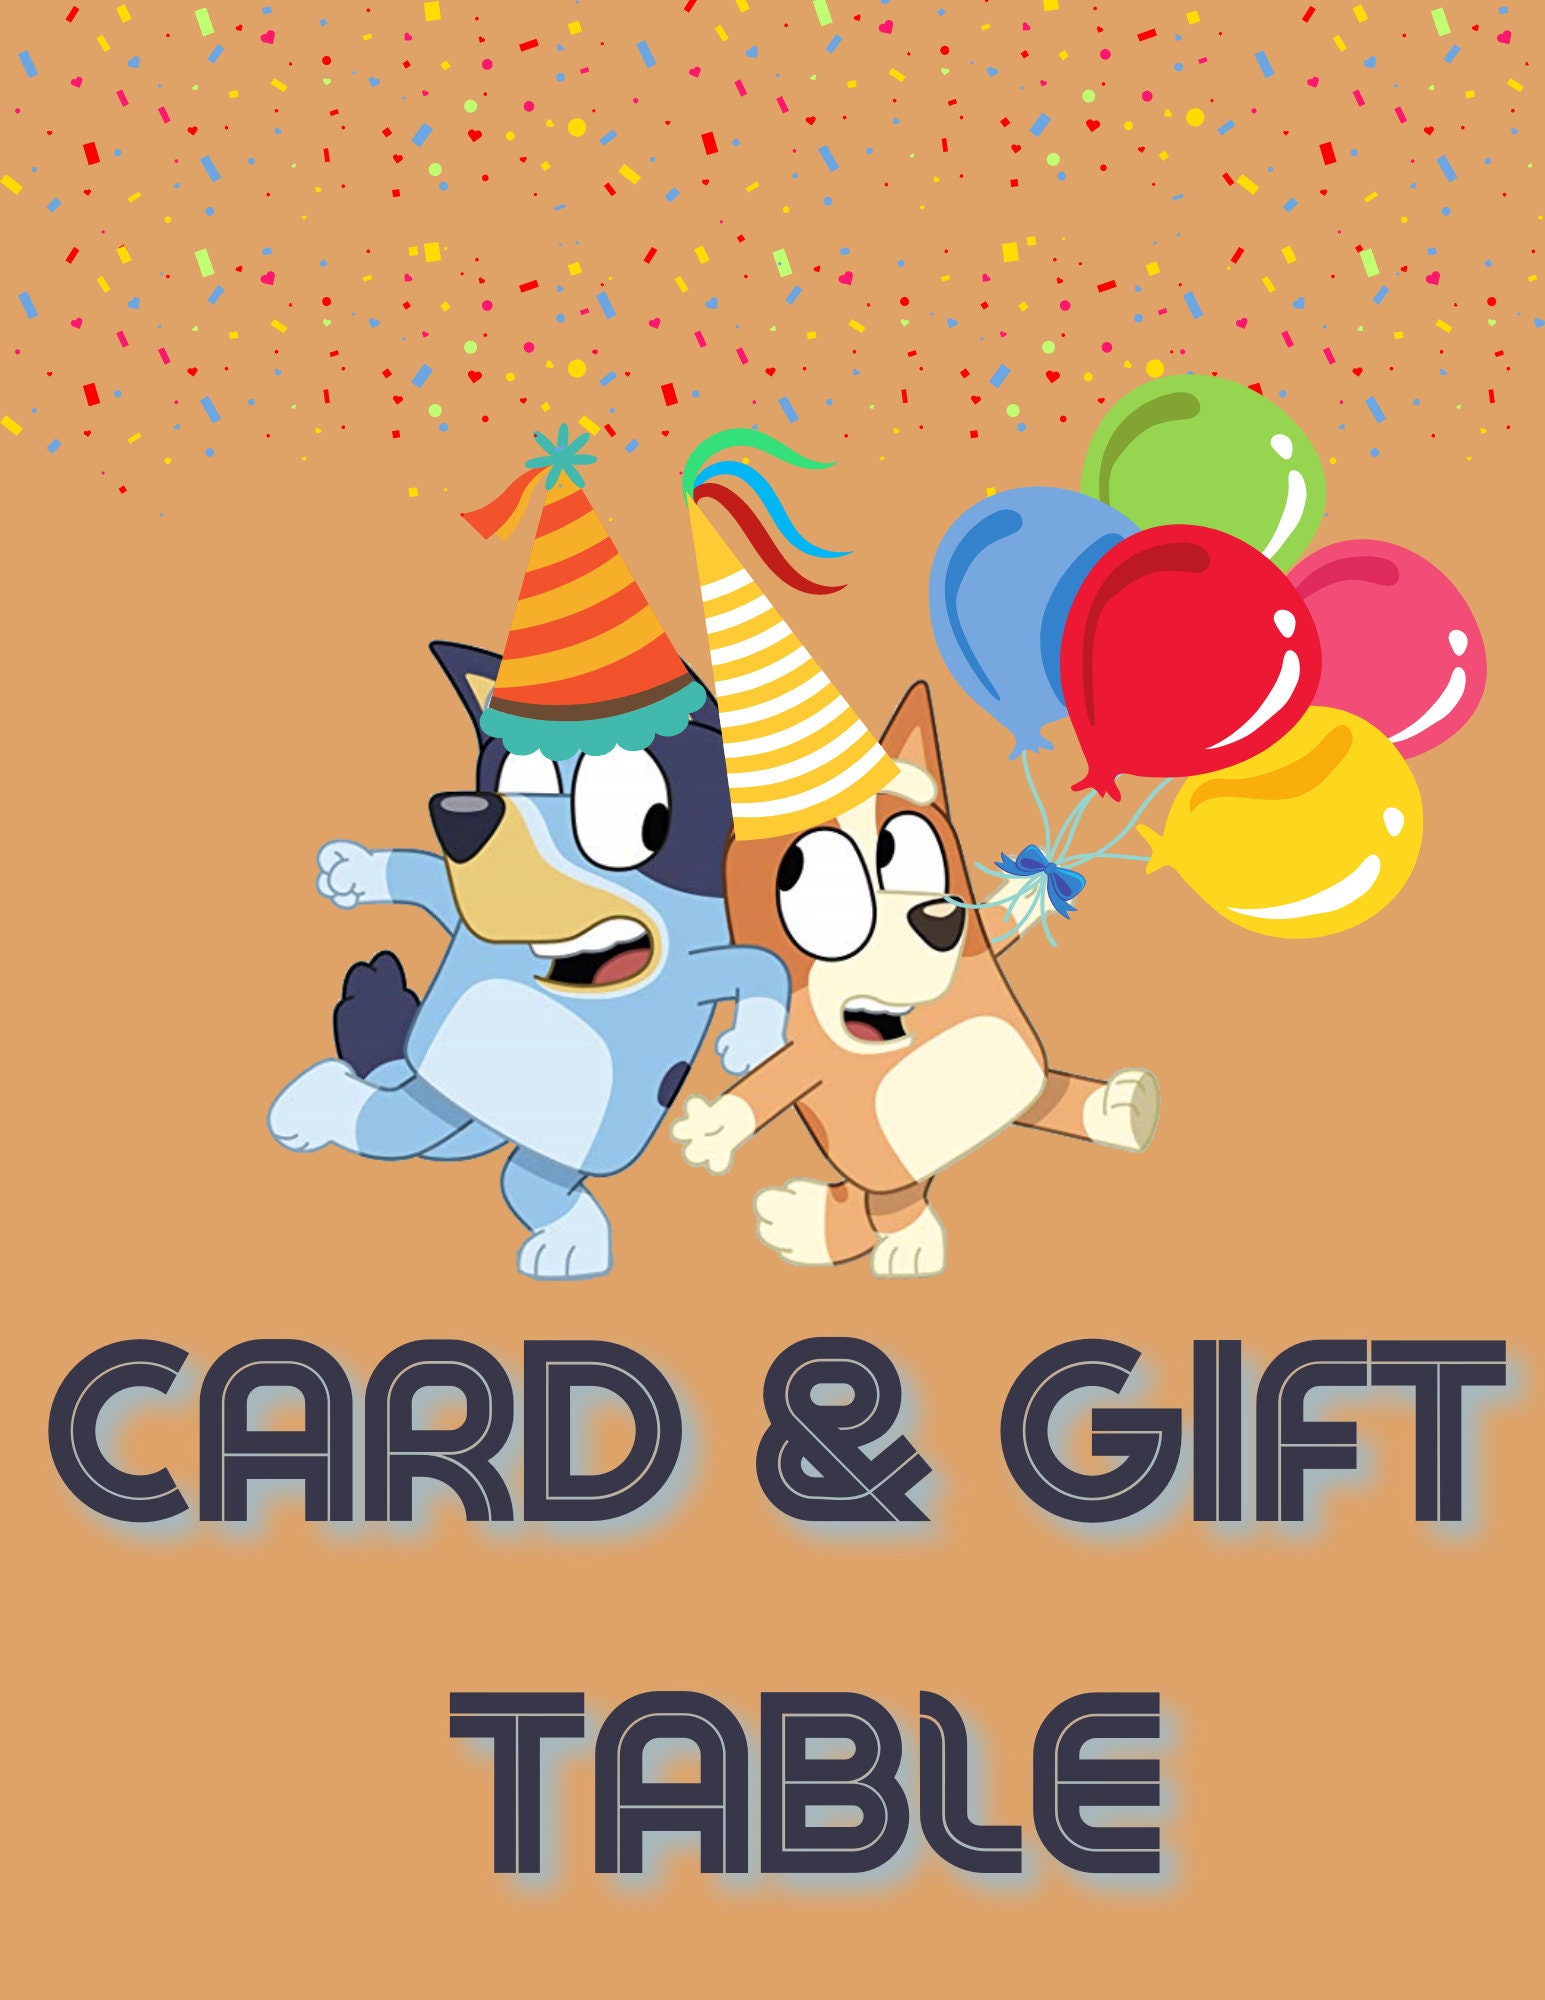 Bluey and Bingo 'Happy Birthday' Card // bluey birthday // bluey birthday  party // bluey bingo // bluey gifts for kids — AstroManatee